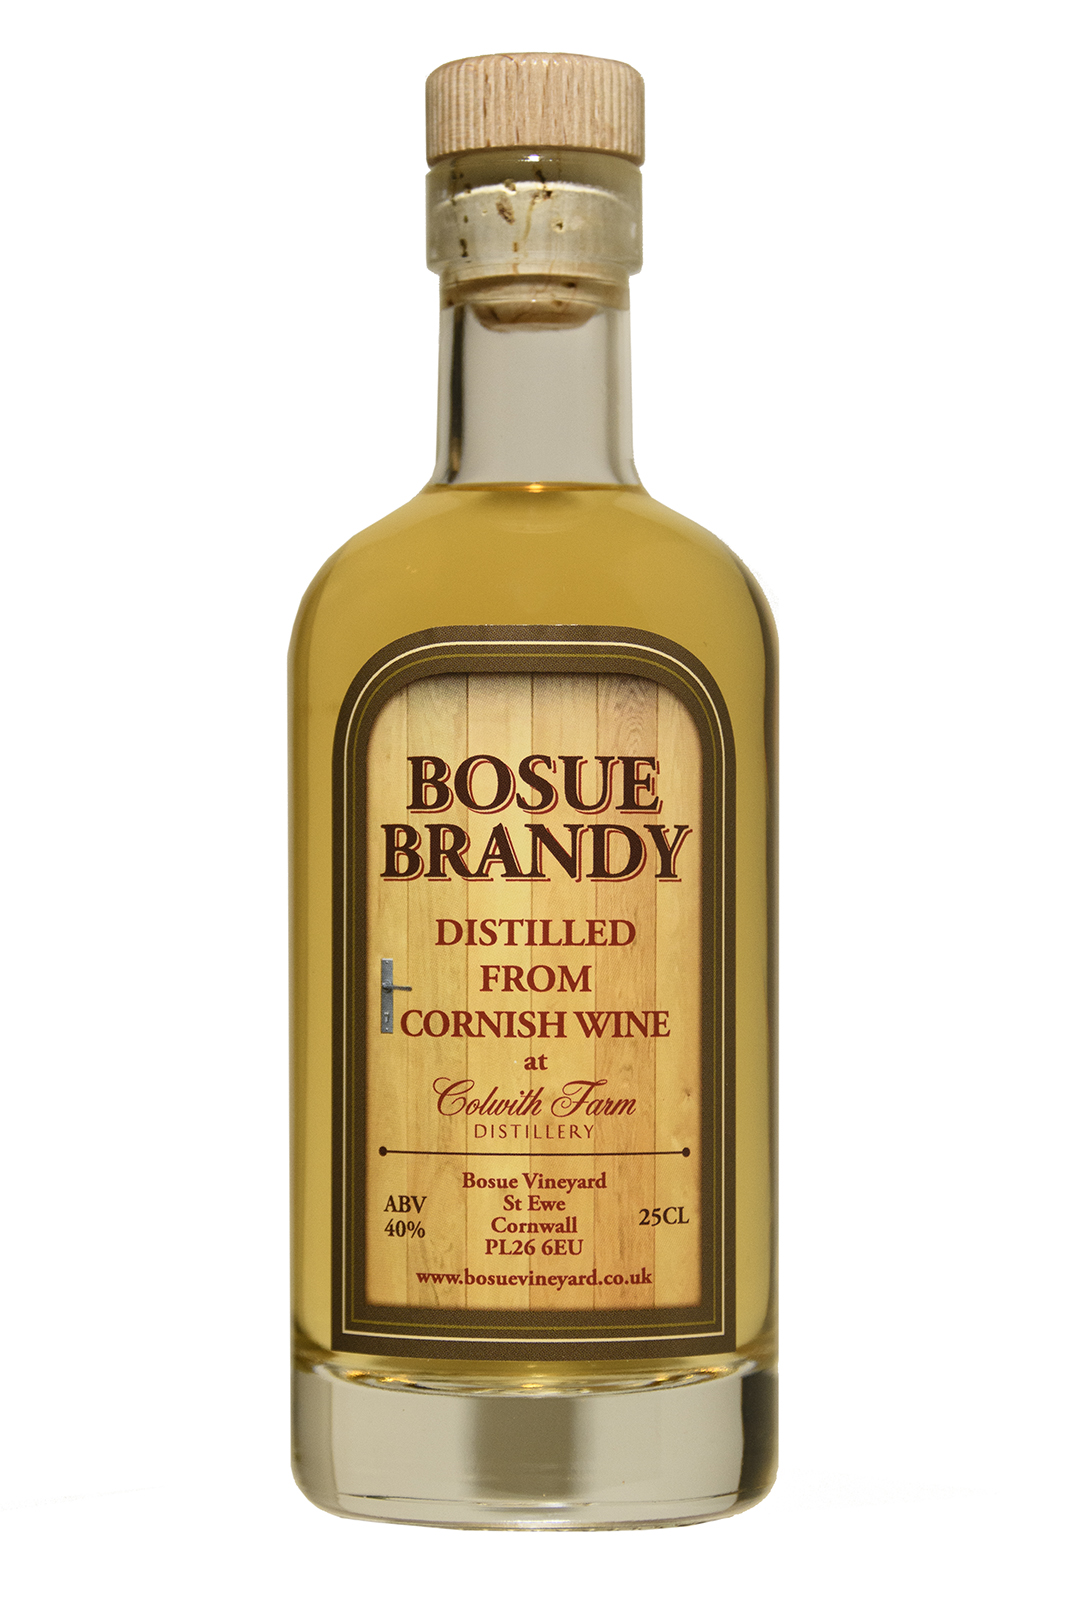 Bosue Brandy